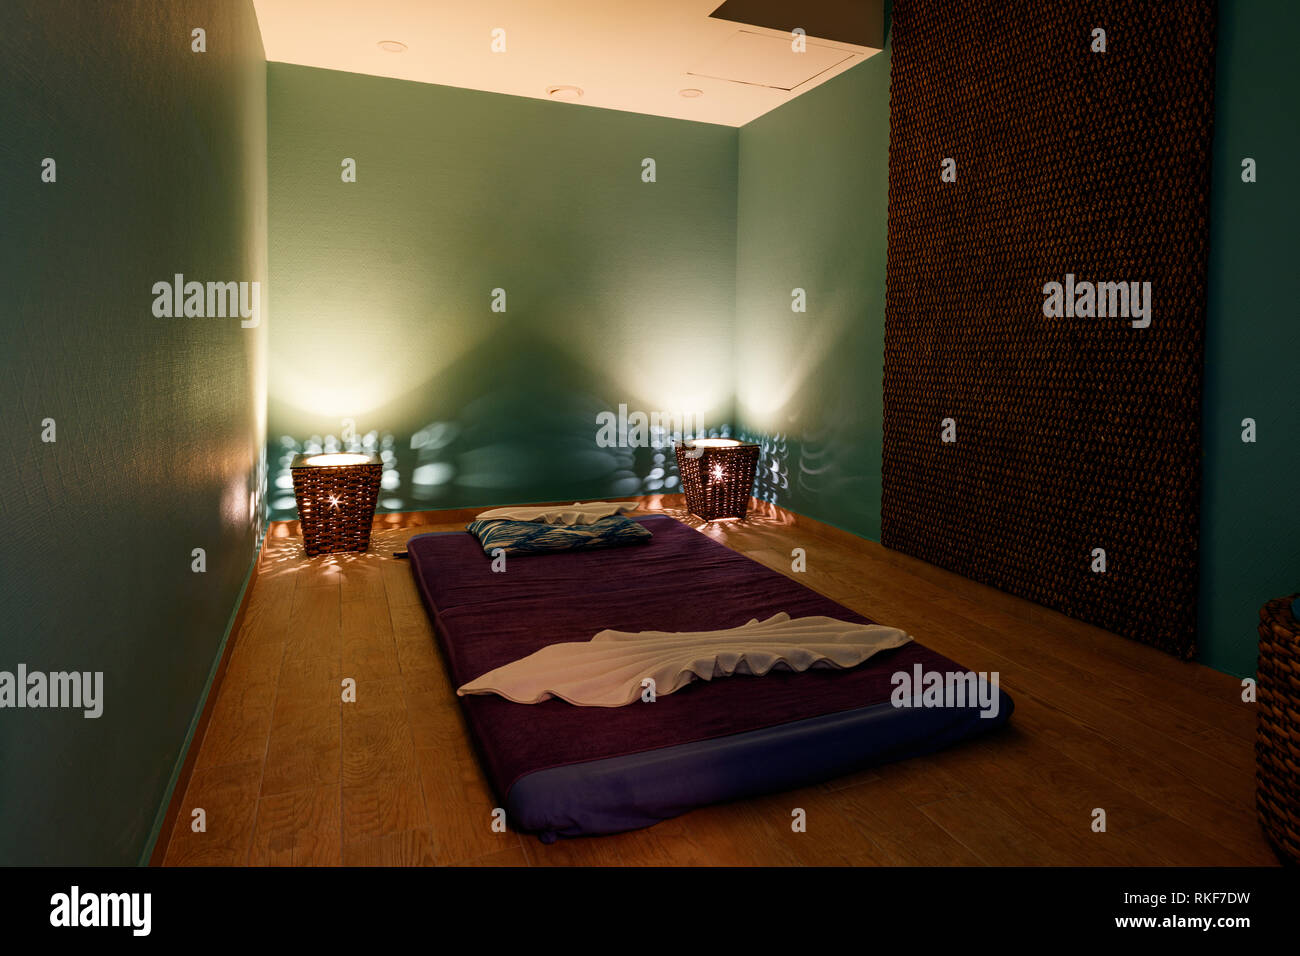 Sala massaggi immagini e fotografie stock ad alta risoluzione - Alamy